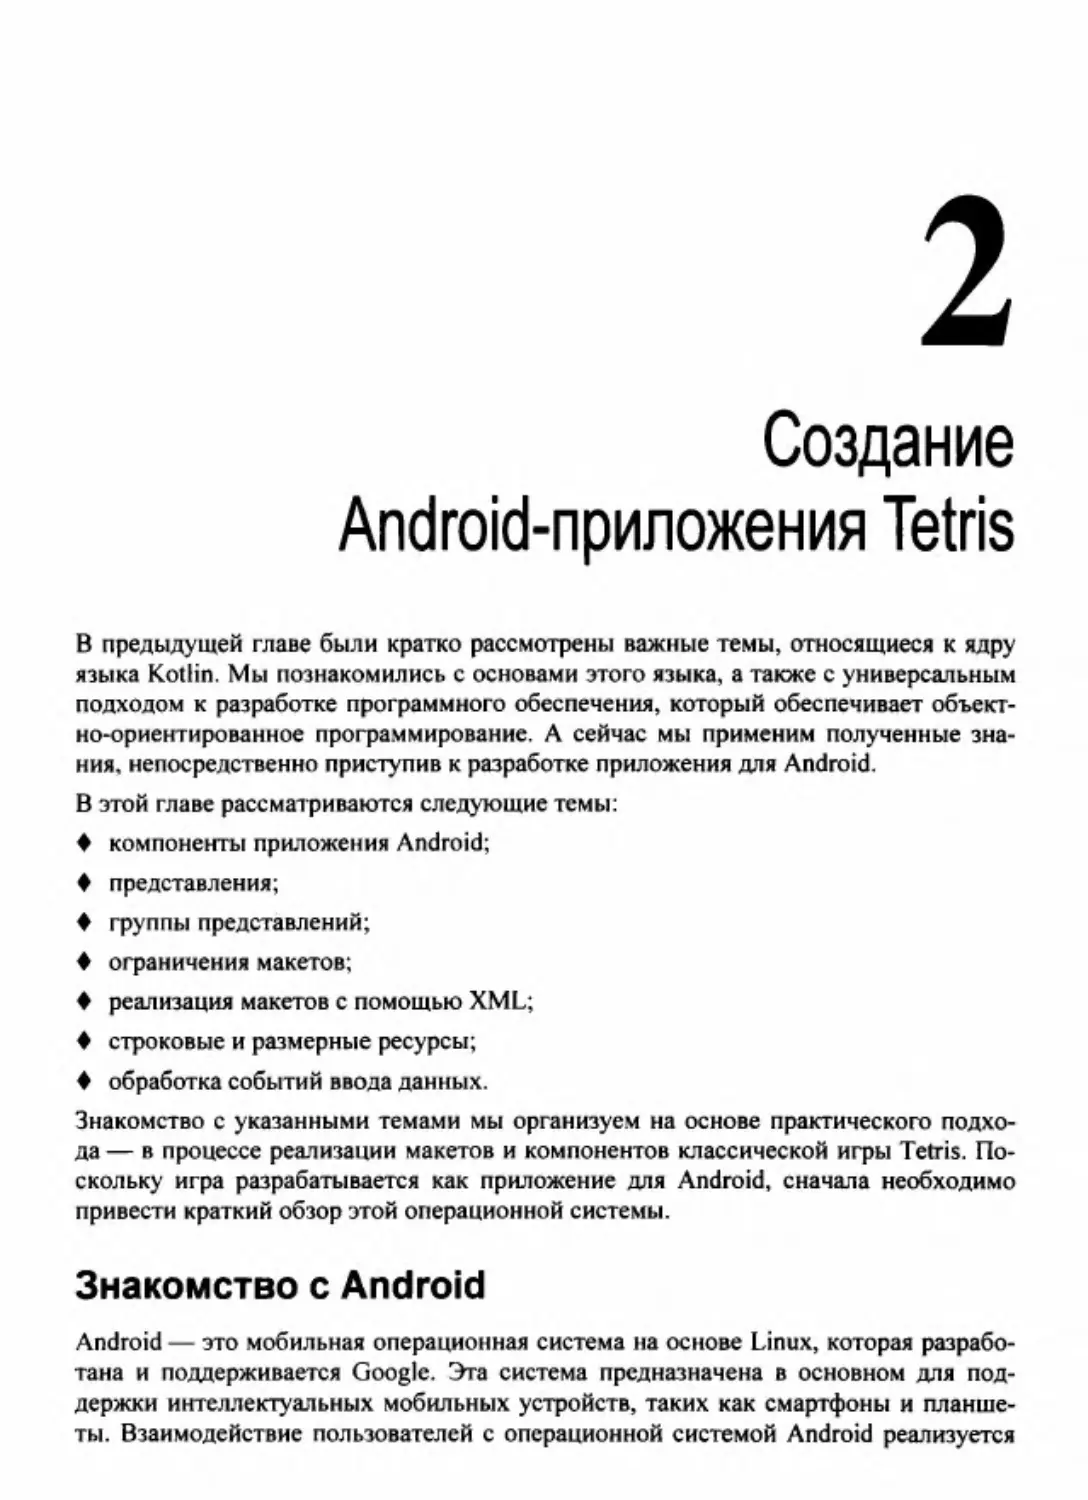 Глава 2. Создание Android-приложения Tetris